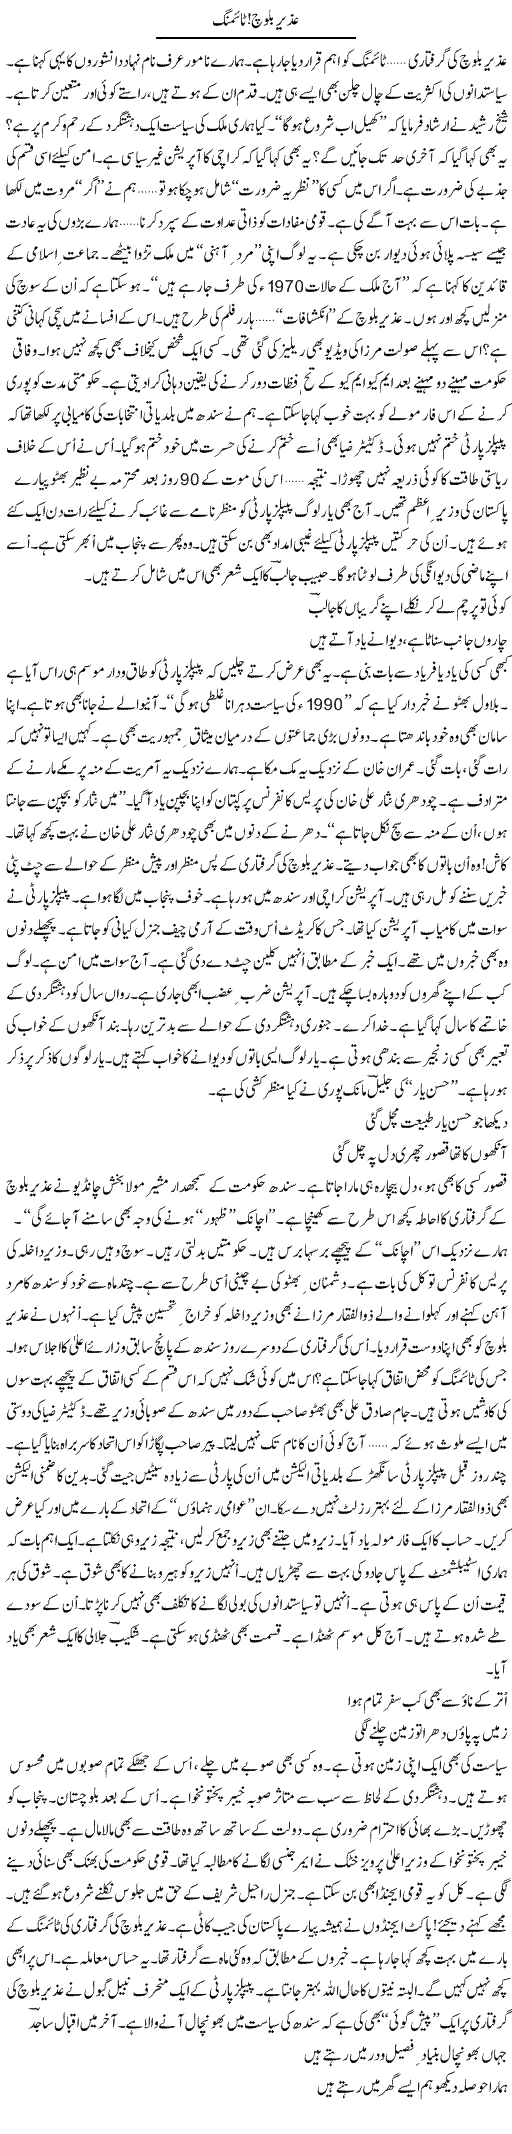 Uzair Baloch! Timing | Ejaz Hafeez Khan | Daily Urdu Columns